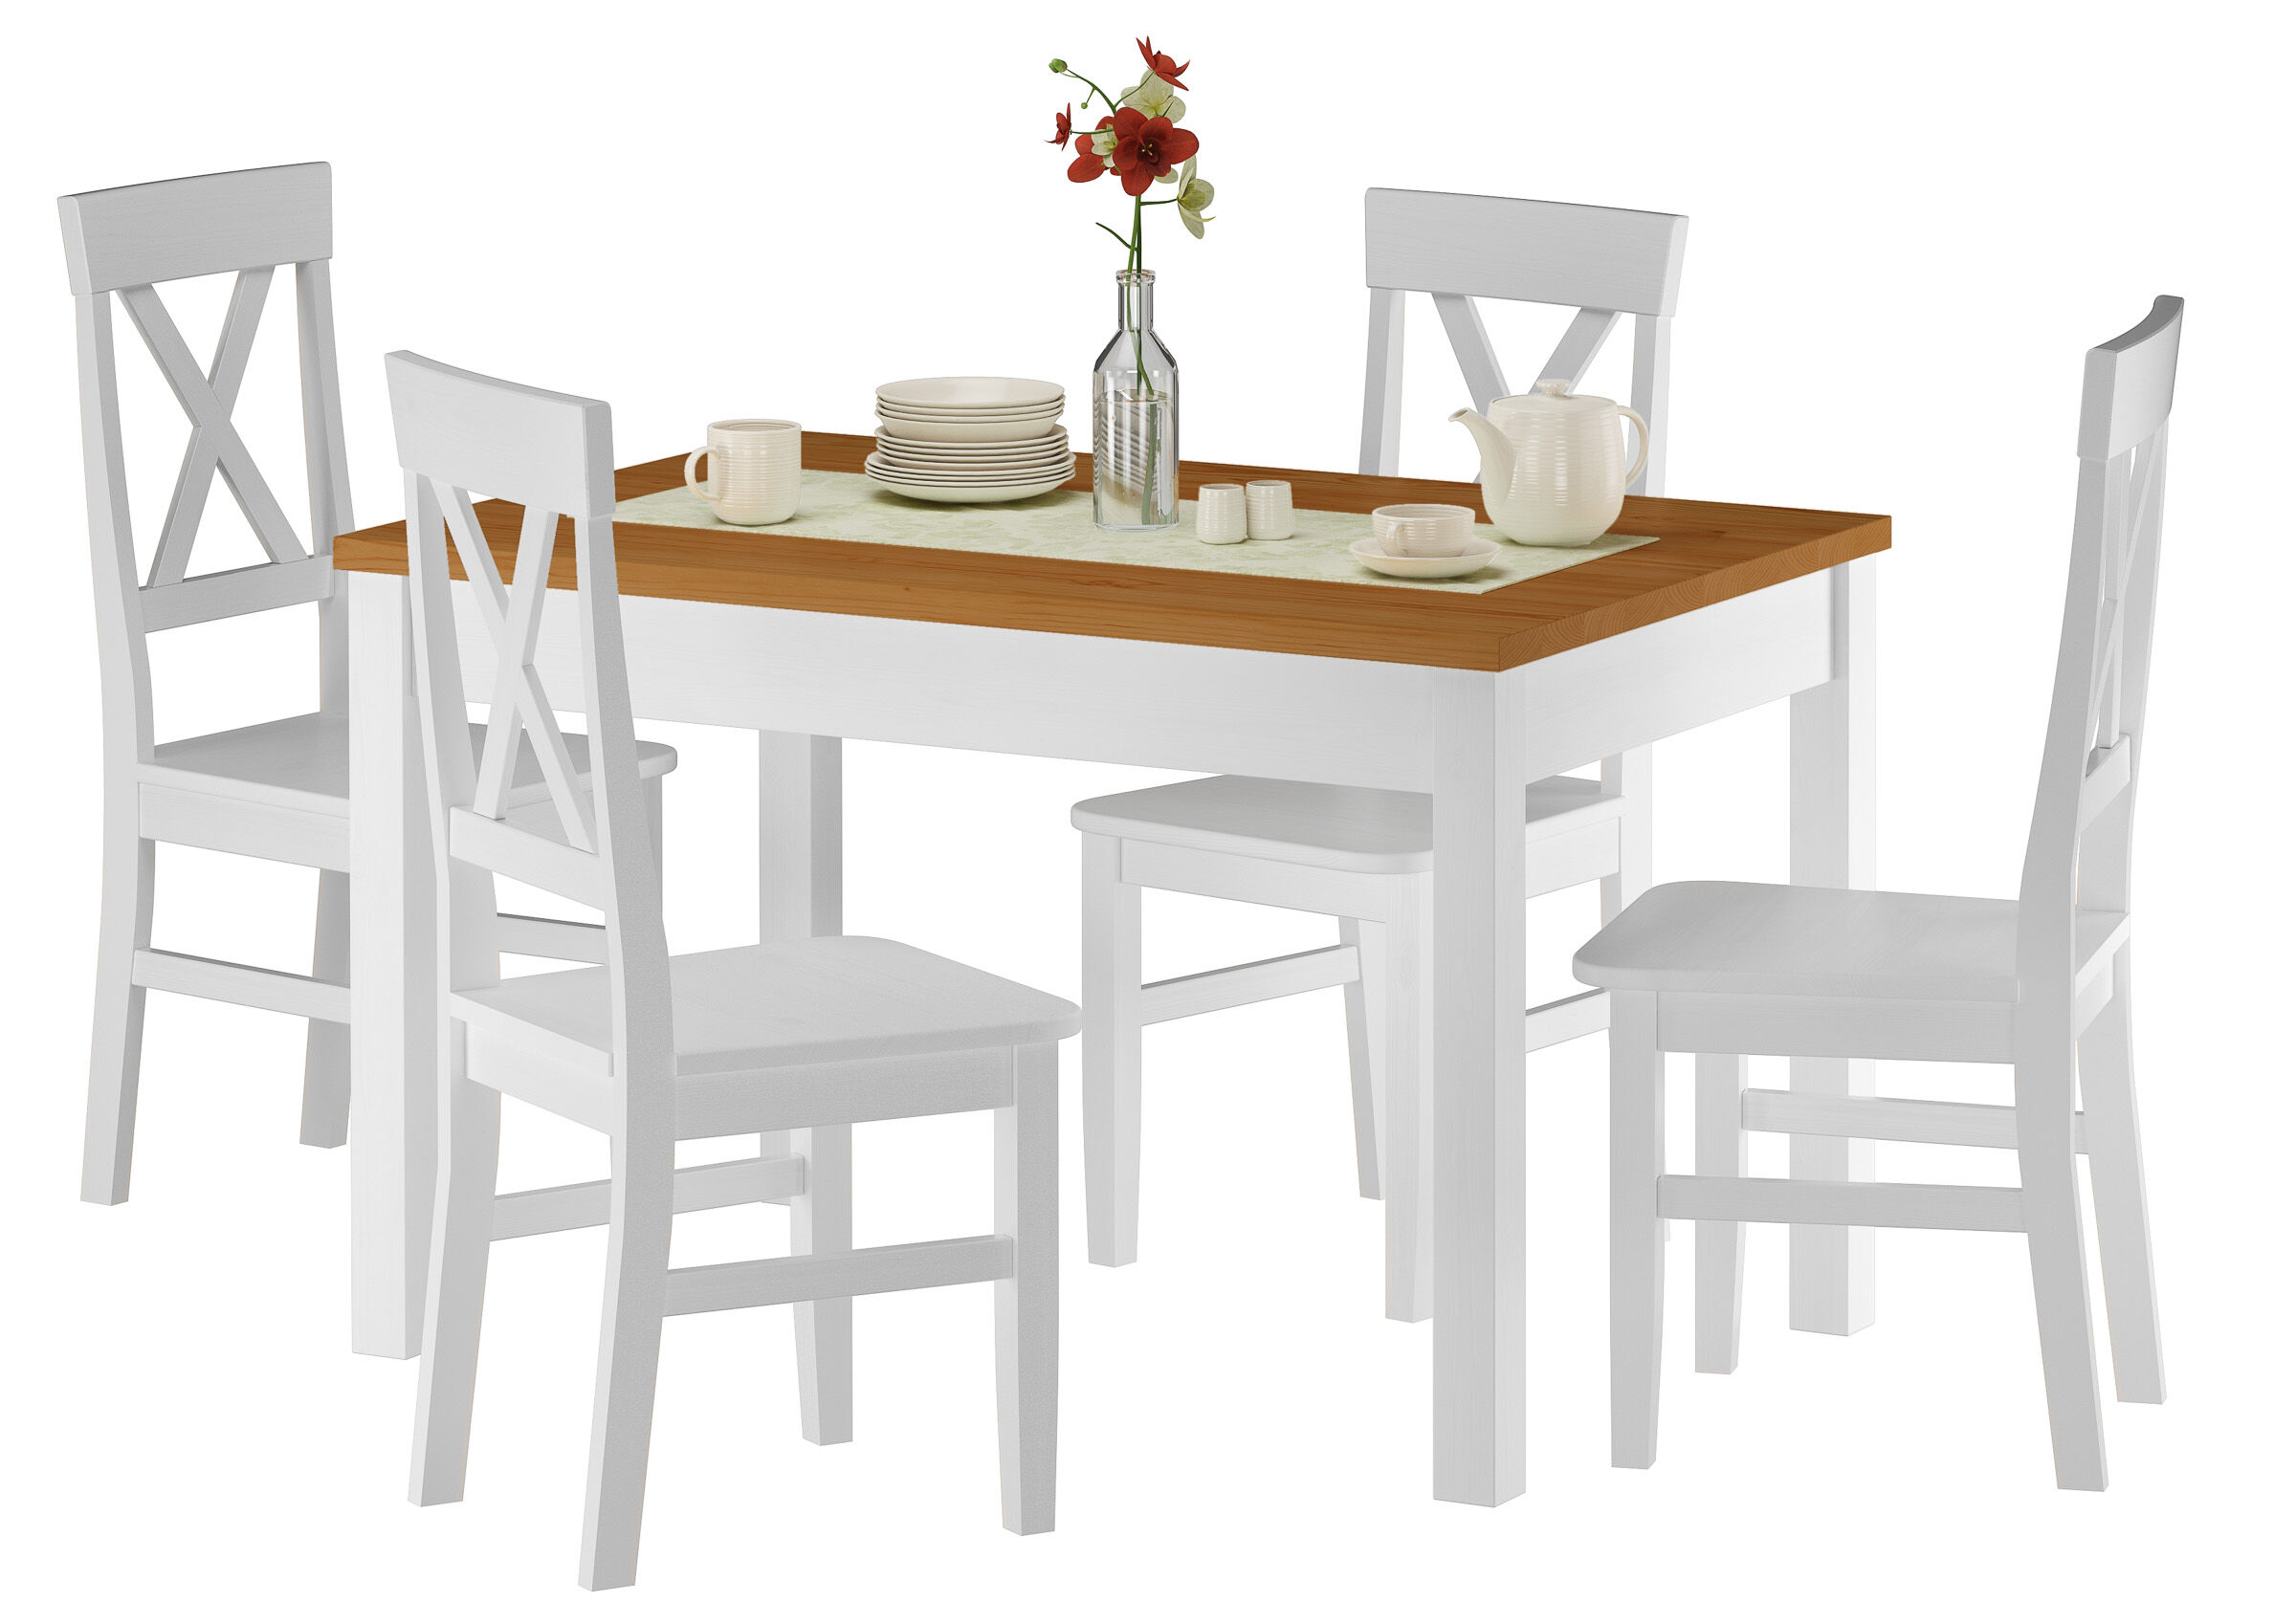 Essgruppe mit stabilem Tisch aus massiver Kiefer, waschweiß lackiert, Tischplatte eiche gebeizt, 80 x 120 cm, Tischbeine Glatt